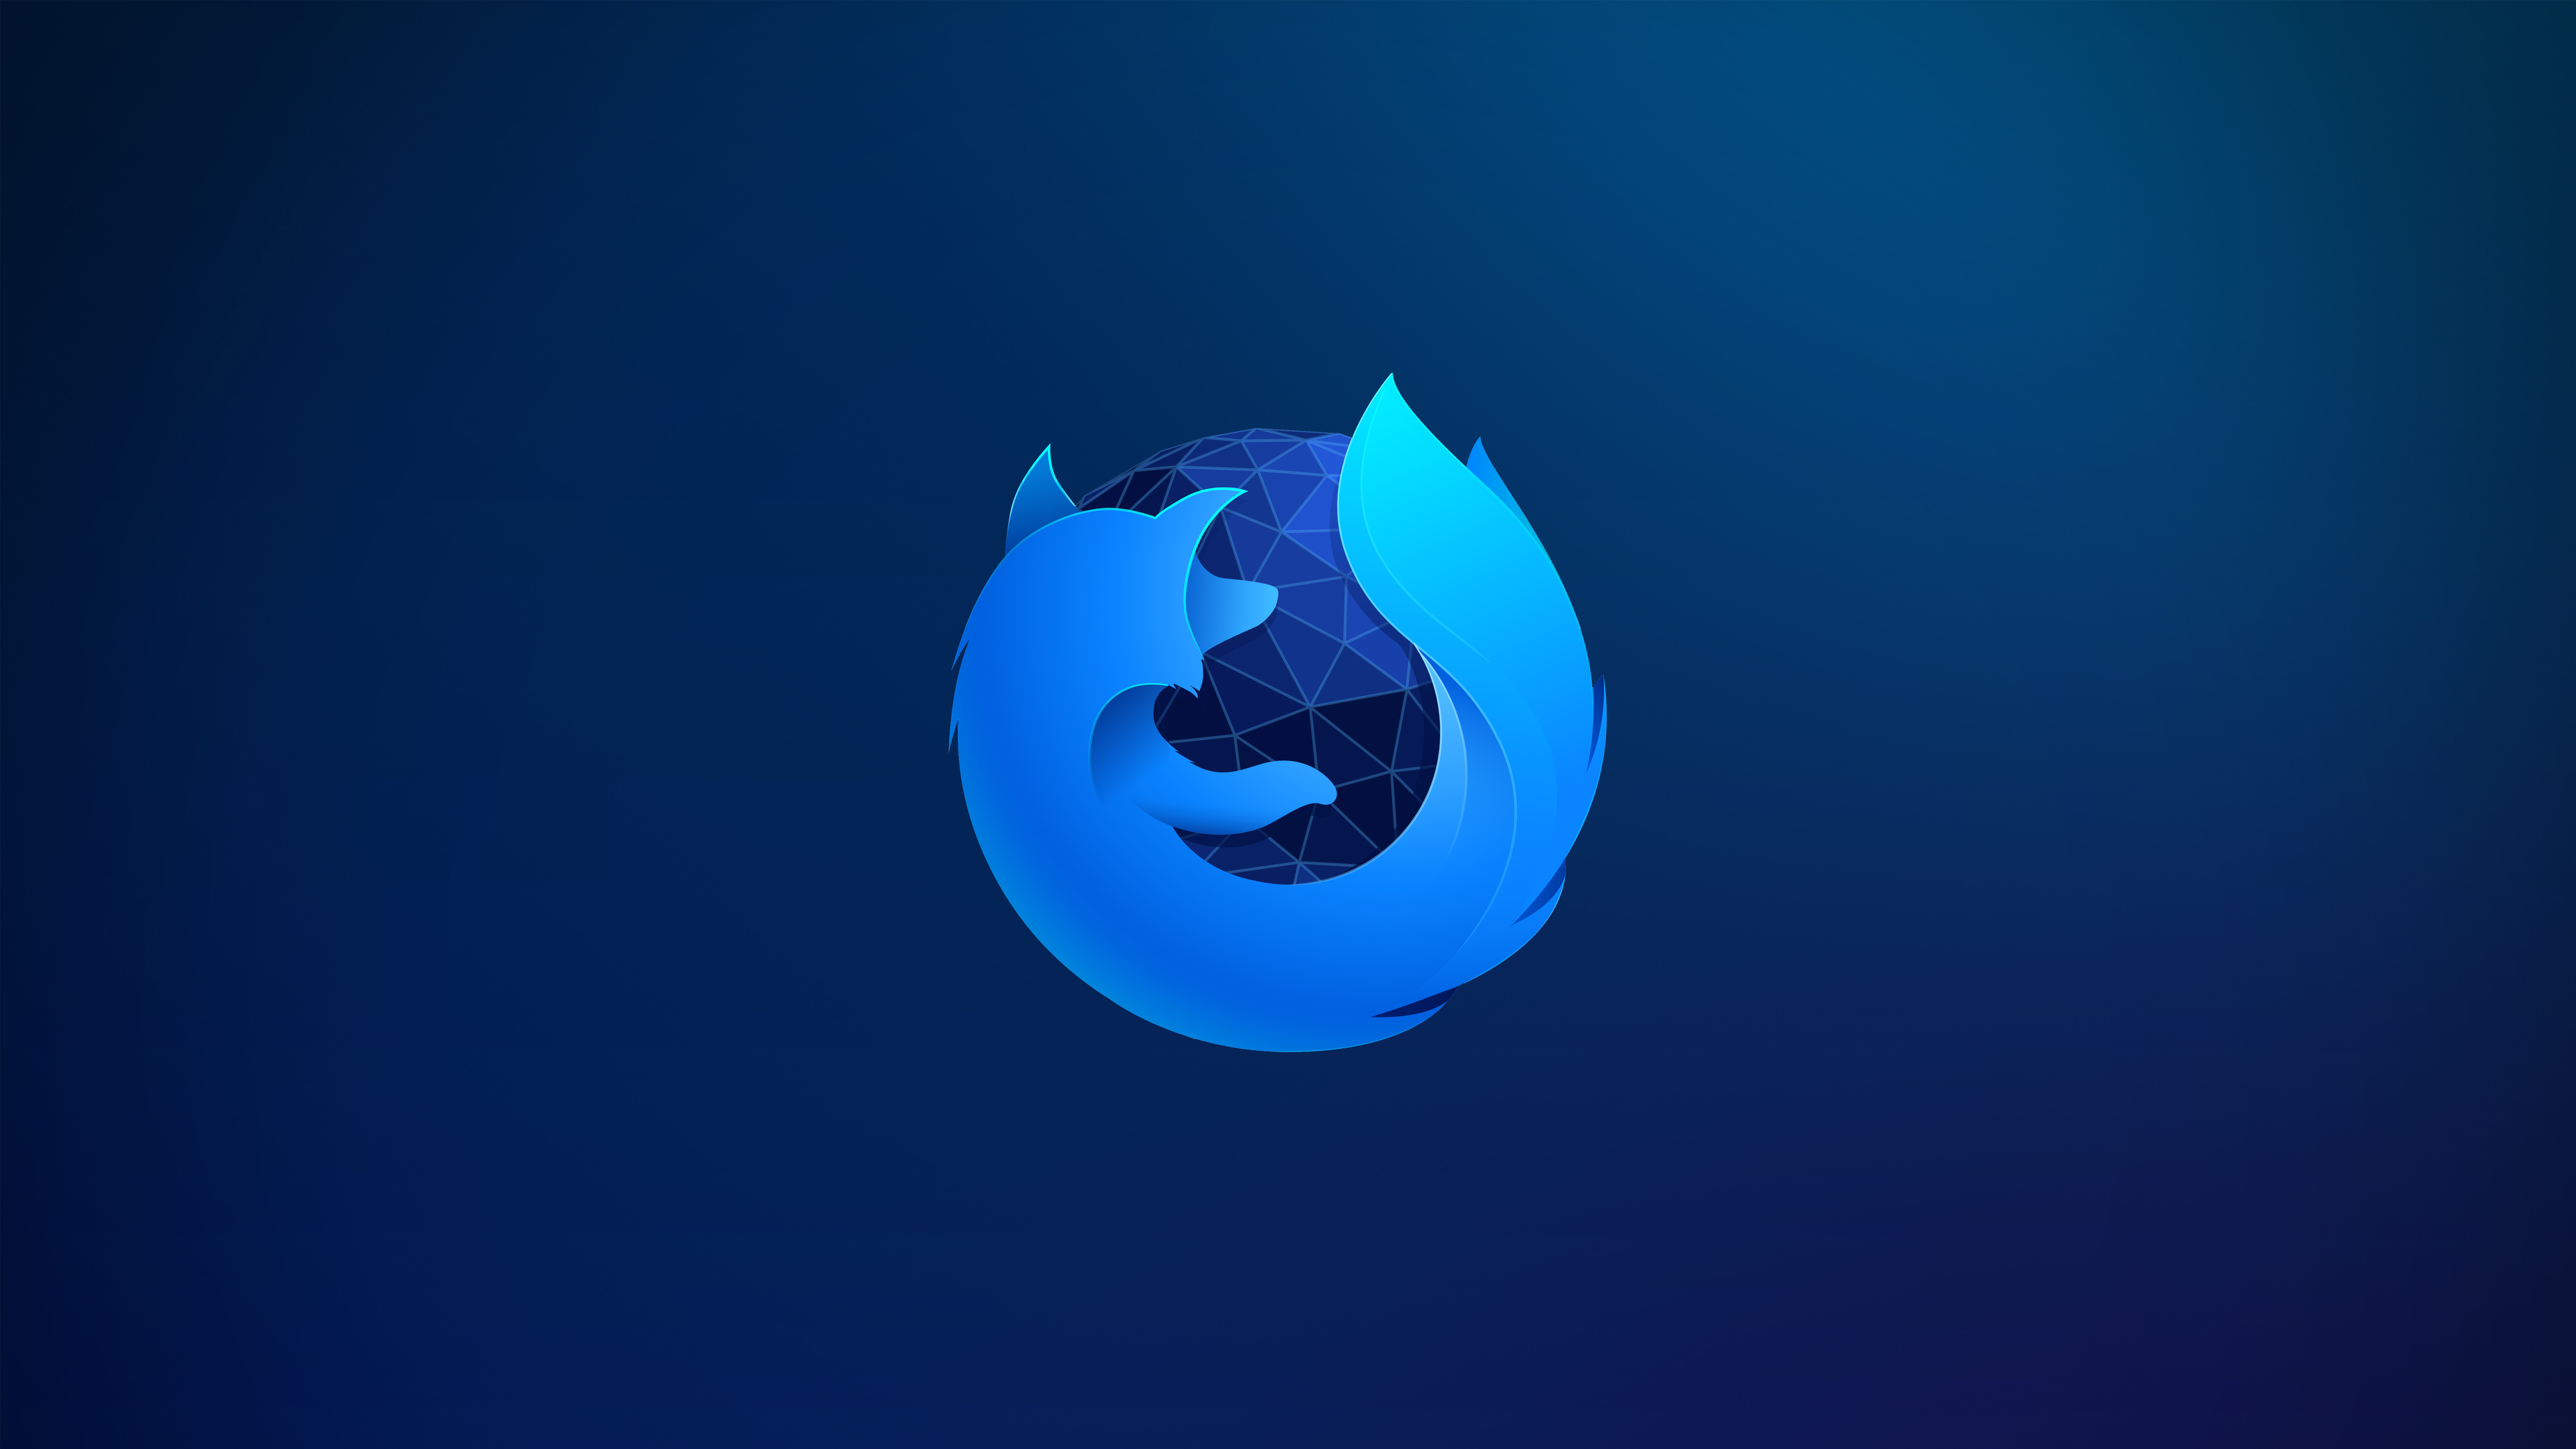 75+] Mozilla Firefox Background - WallpaperSafari